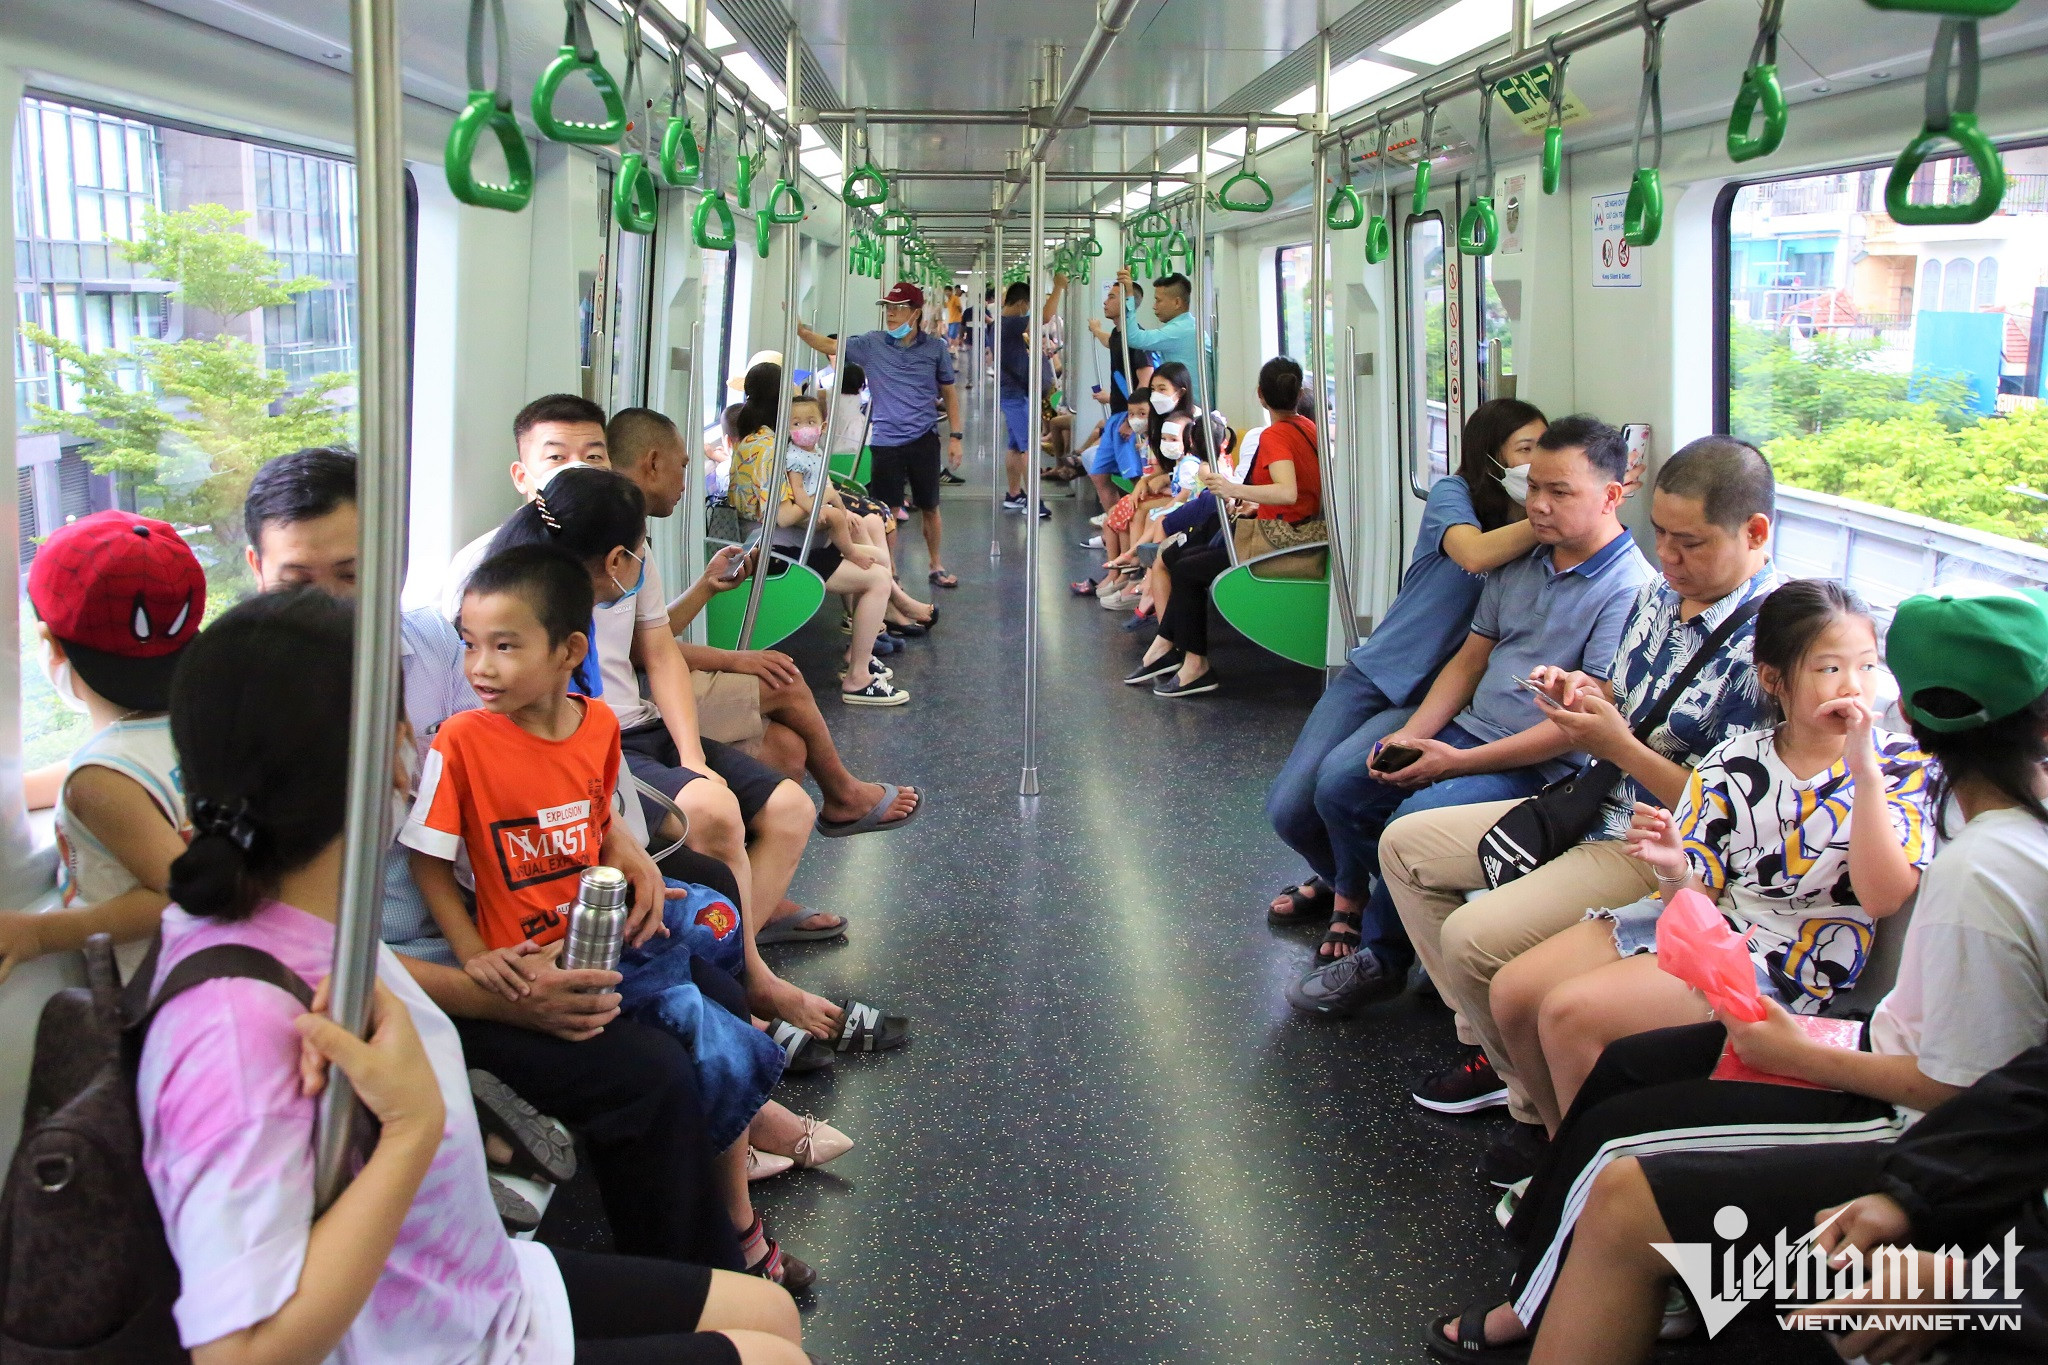 Trên đoàn tàu, tất cả các ghế đều kín chỗ, đối tượng hành khách chủ yếu là người già, trẻ em và các bạn trẻ đi check-in.